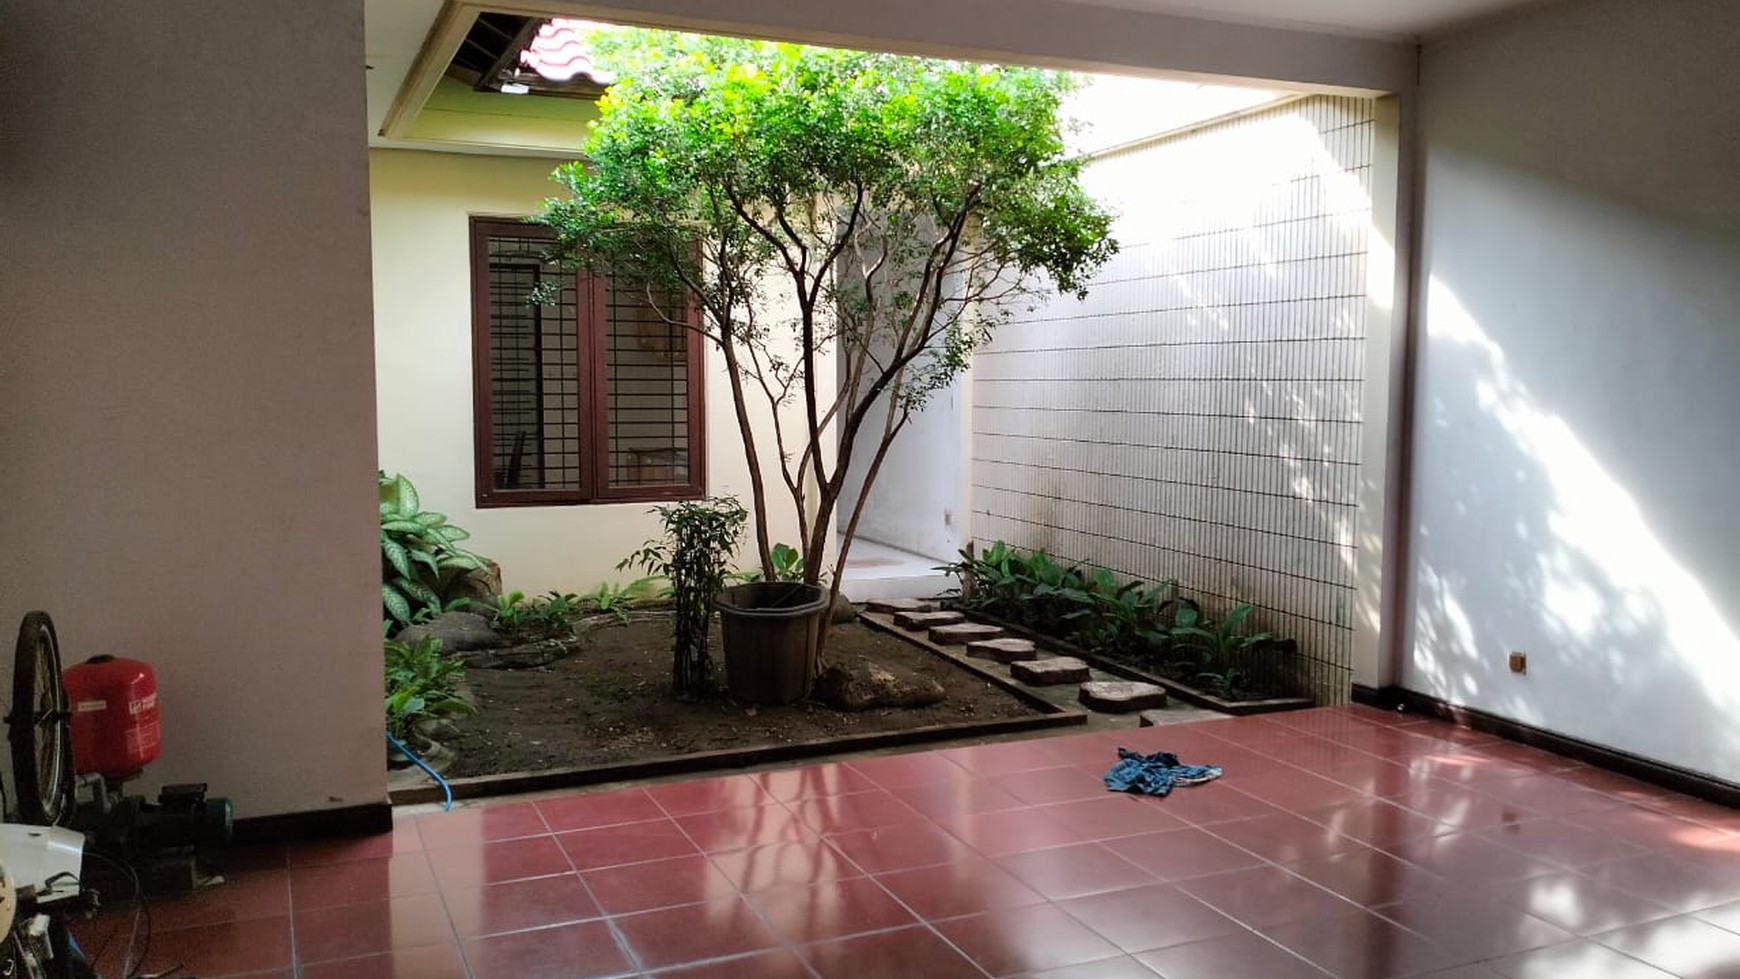 Disewakan Rumah Mewah & Asri Jl. Kupang Indah VI - Surabaya Barat(bonus kolam renang)